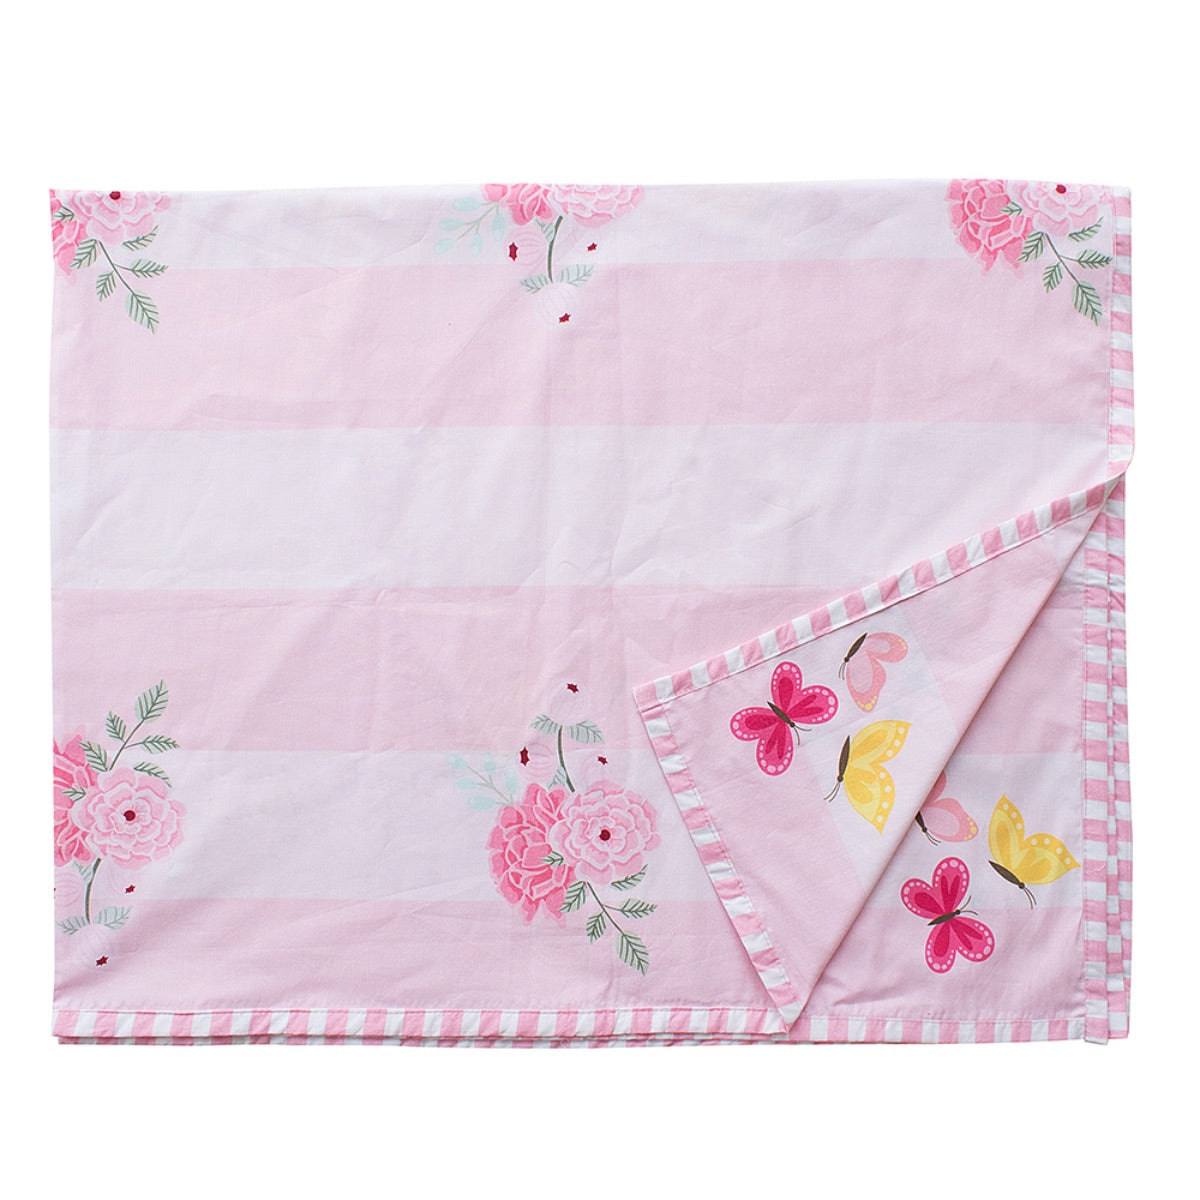 Little By Little Floral & Flutter Baby Dohar Blanket, Pink